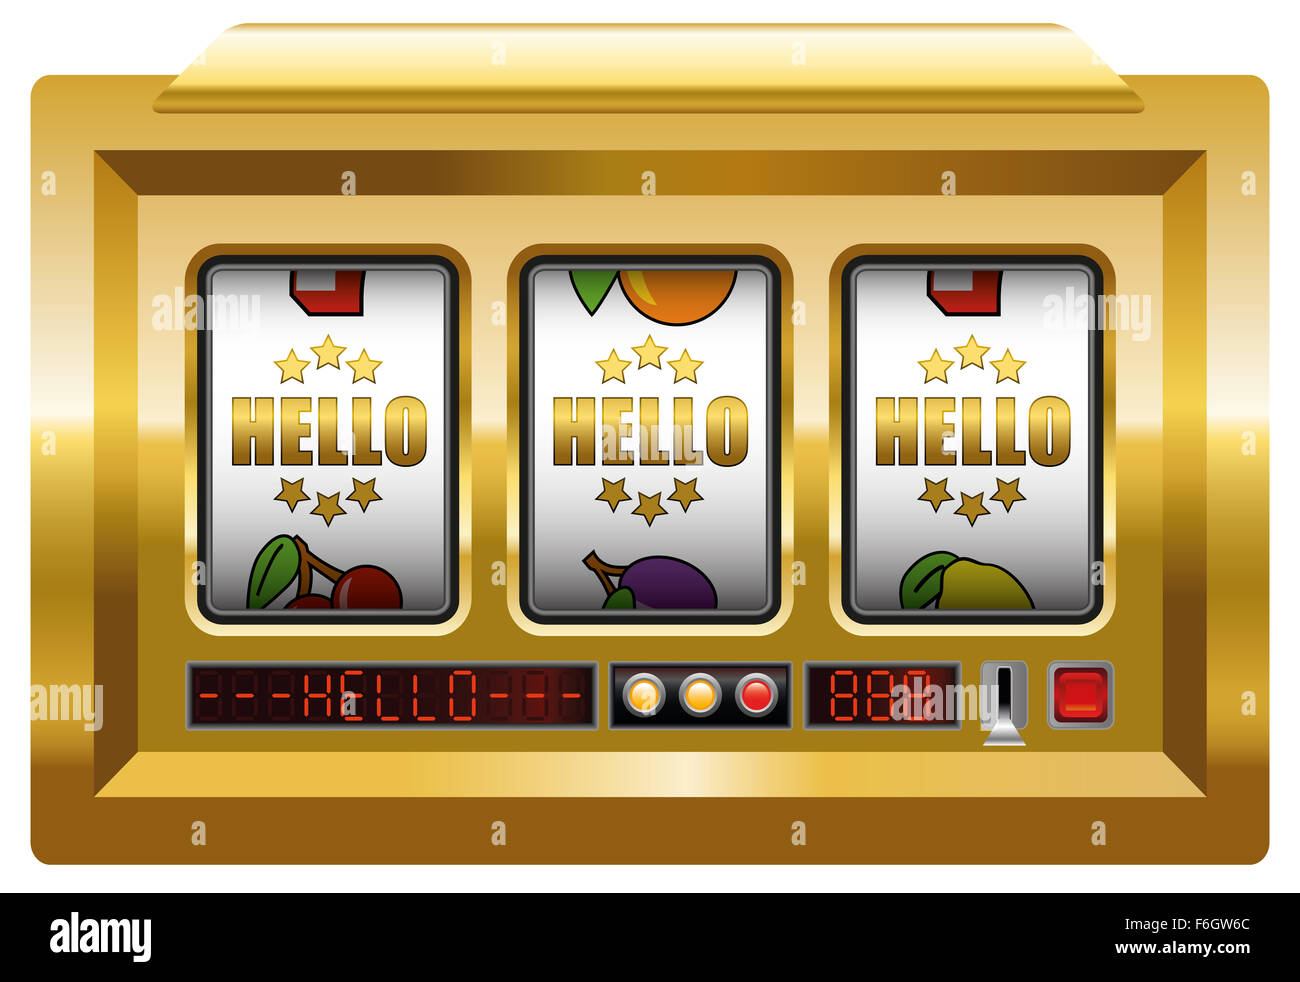 Golden hello - terme opérationnel - machine à sous avec trois bobines d'or lettrage Bonjour. Illustration sur fond blanc. Banque D'Images